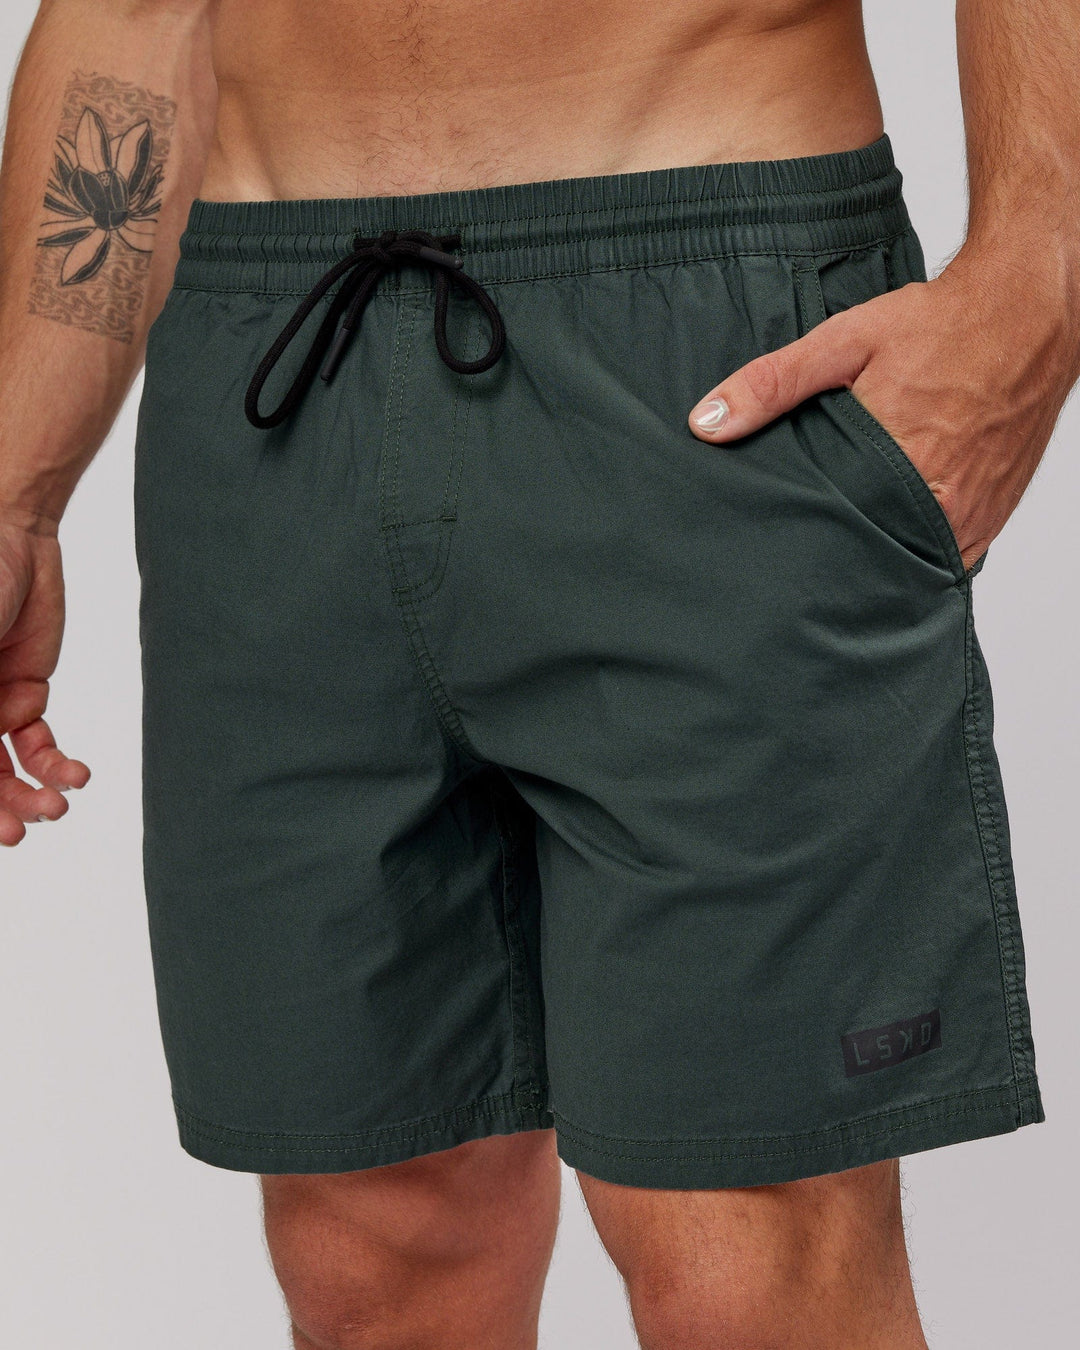 Daily Shorts - Vital Green